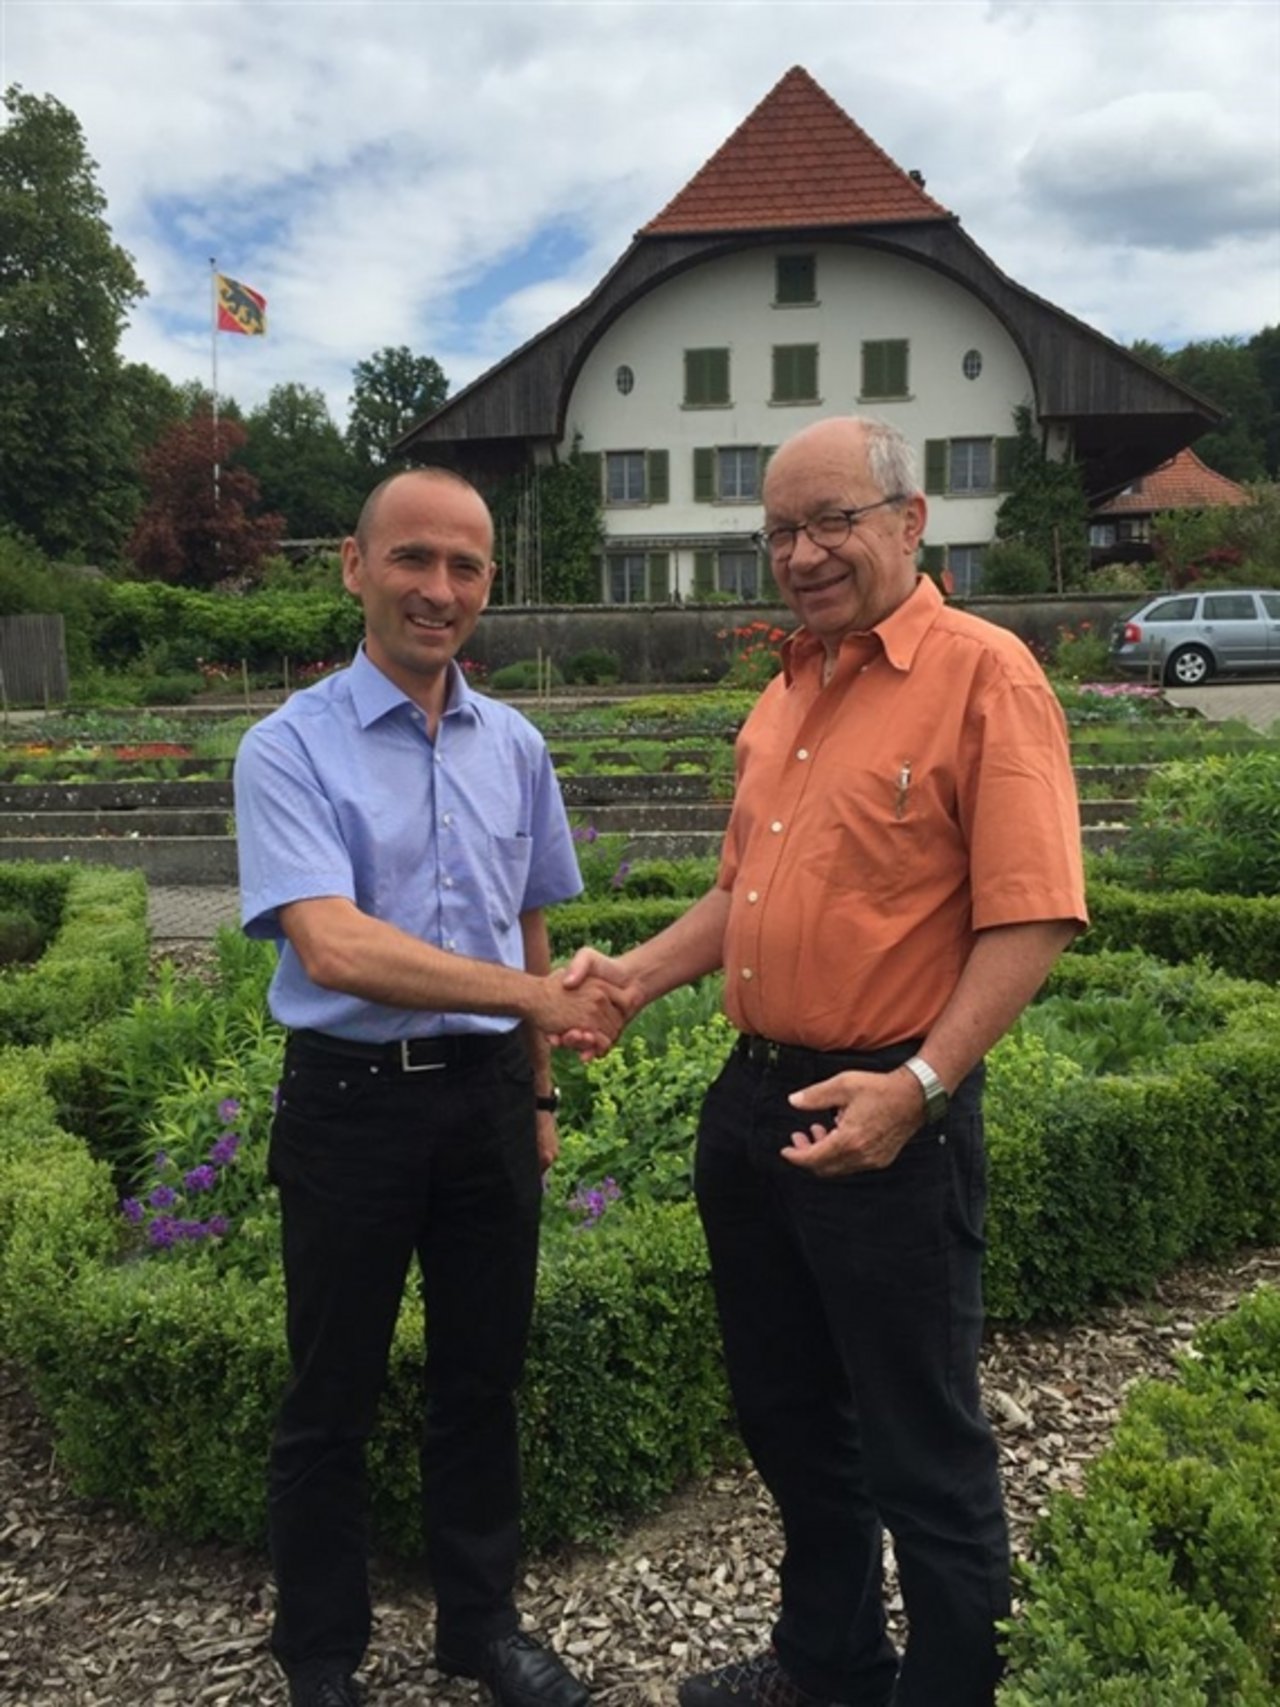 Der neue Inforama-Leiter Markus Wildisen (links) besucht am 1. Juni mit Hans Peter Baumann, dem interimistischen Leiter des Inforama, den Standort Waldhof in Langenthal. (Bild zVg) 